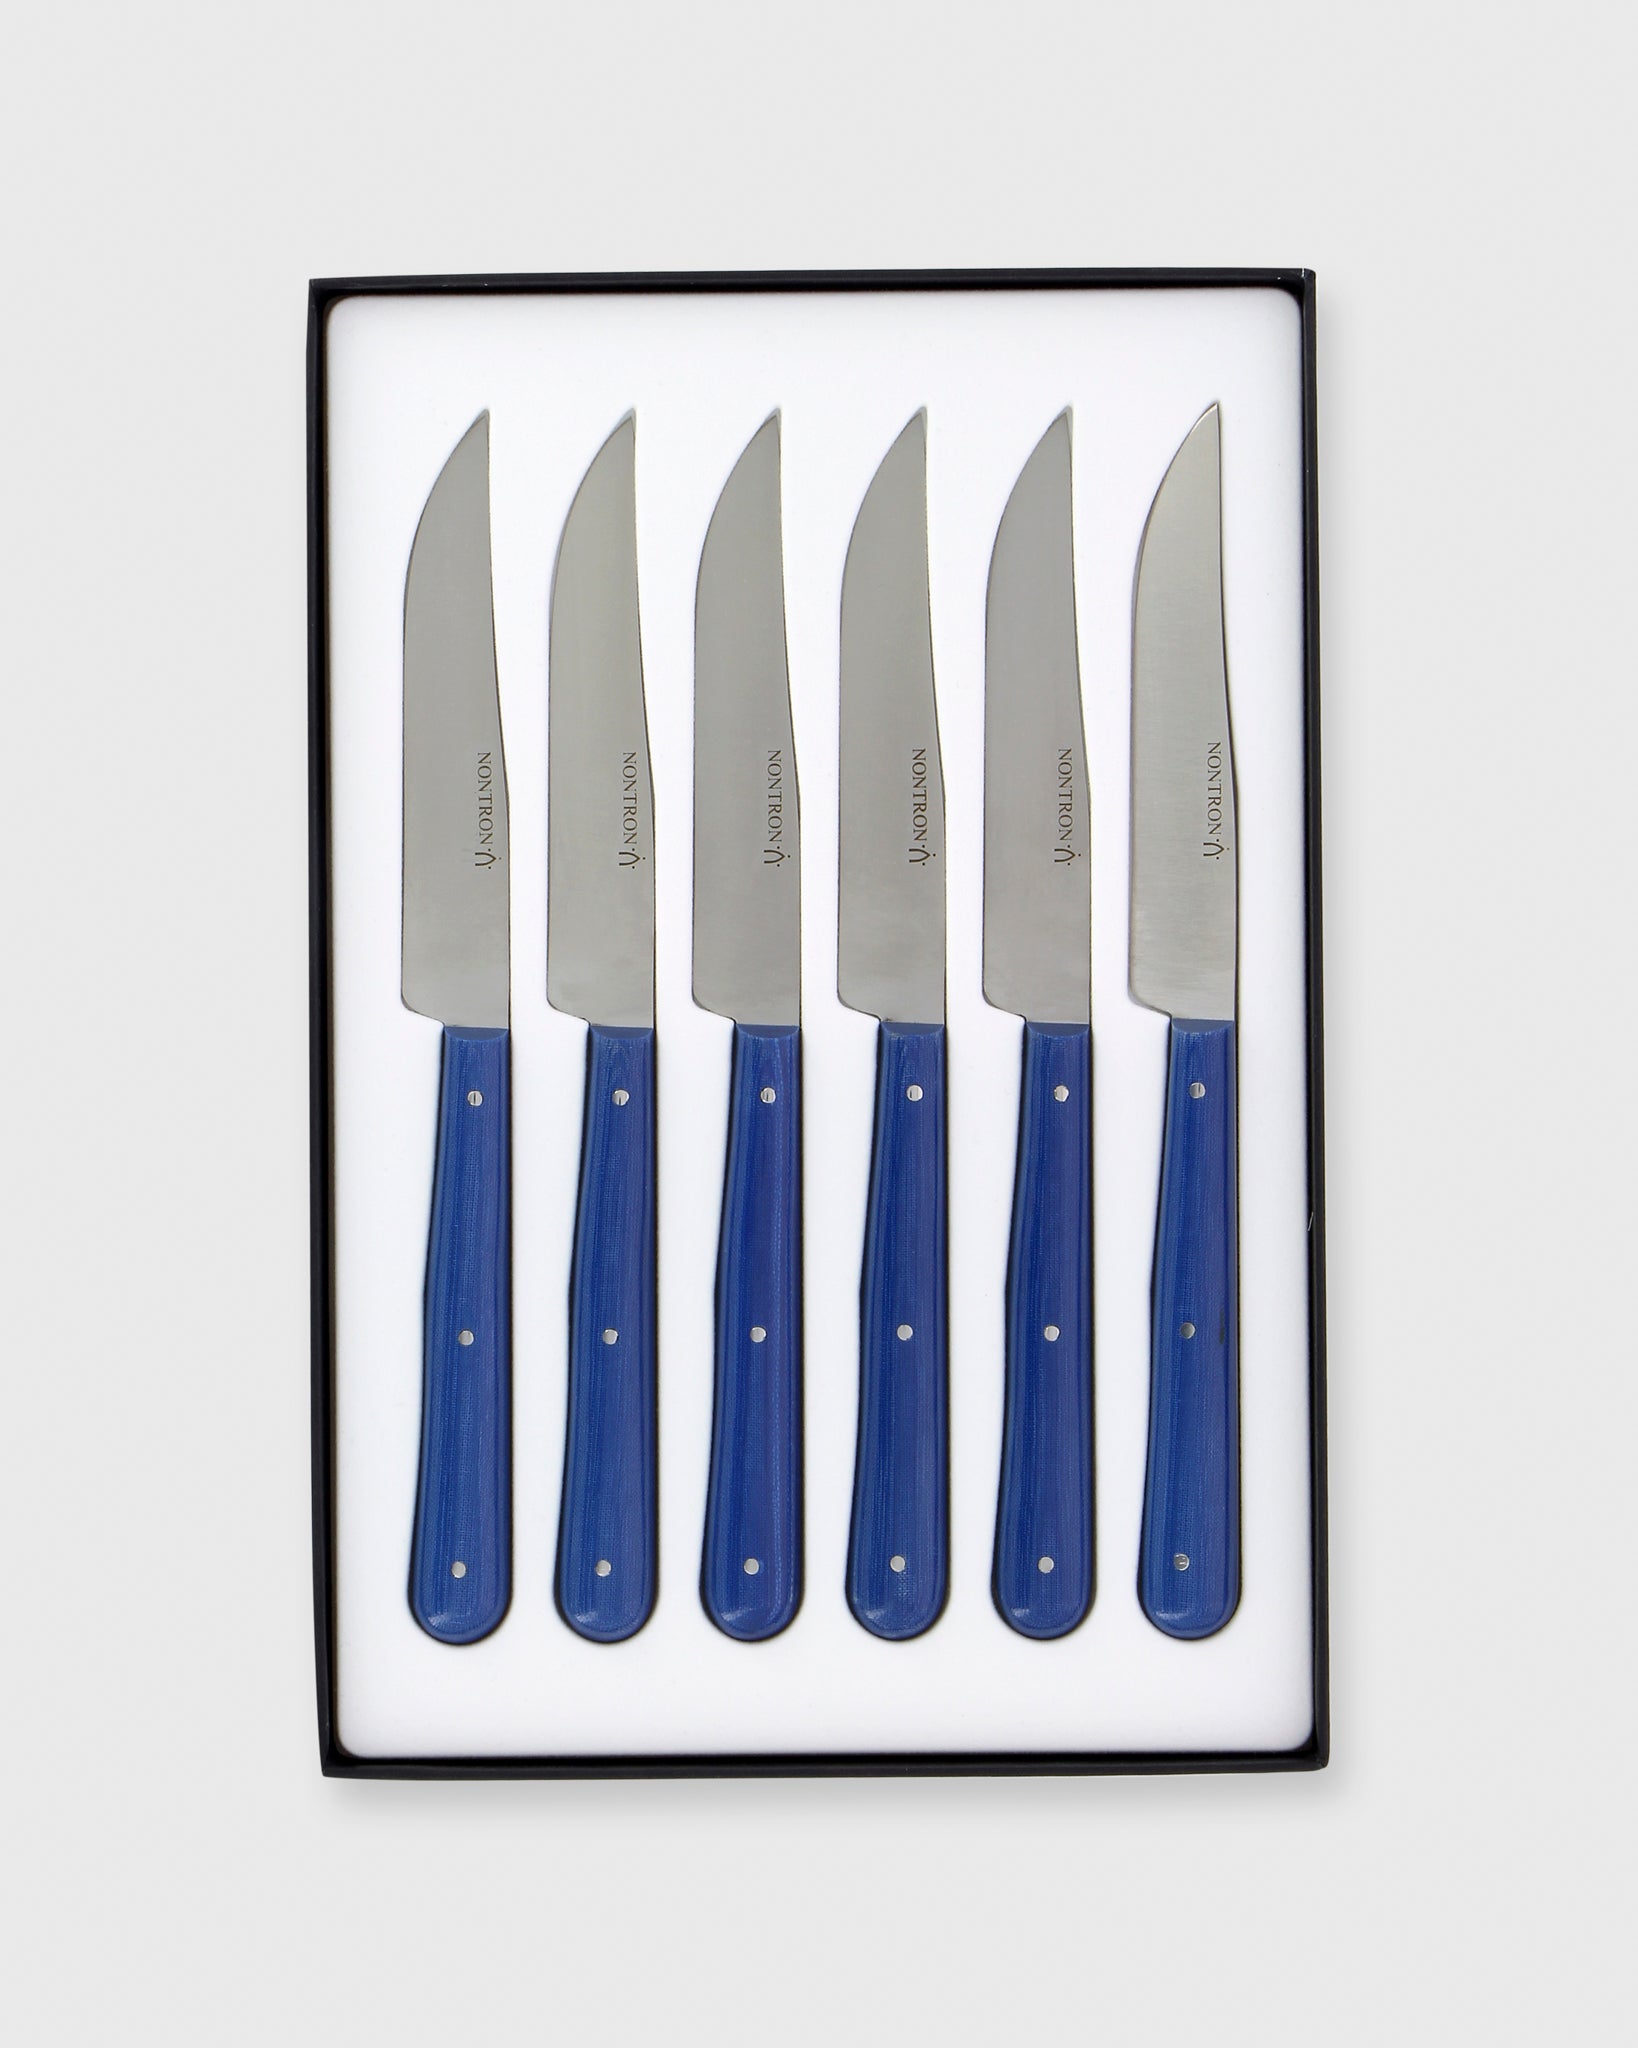 Steak knives CLASSIC COLOUR, set of 4, 12 cm, purple yam, Wüsthof 